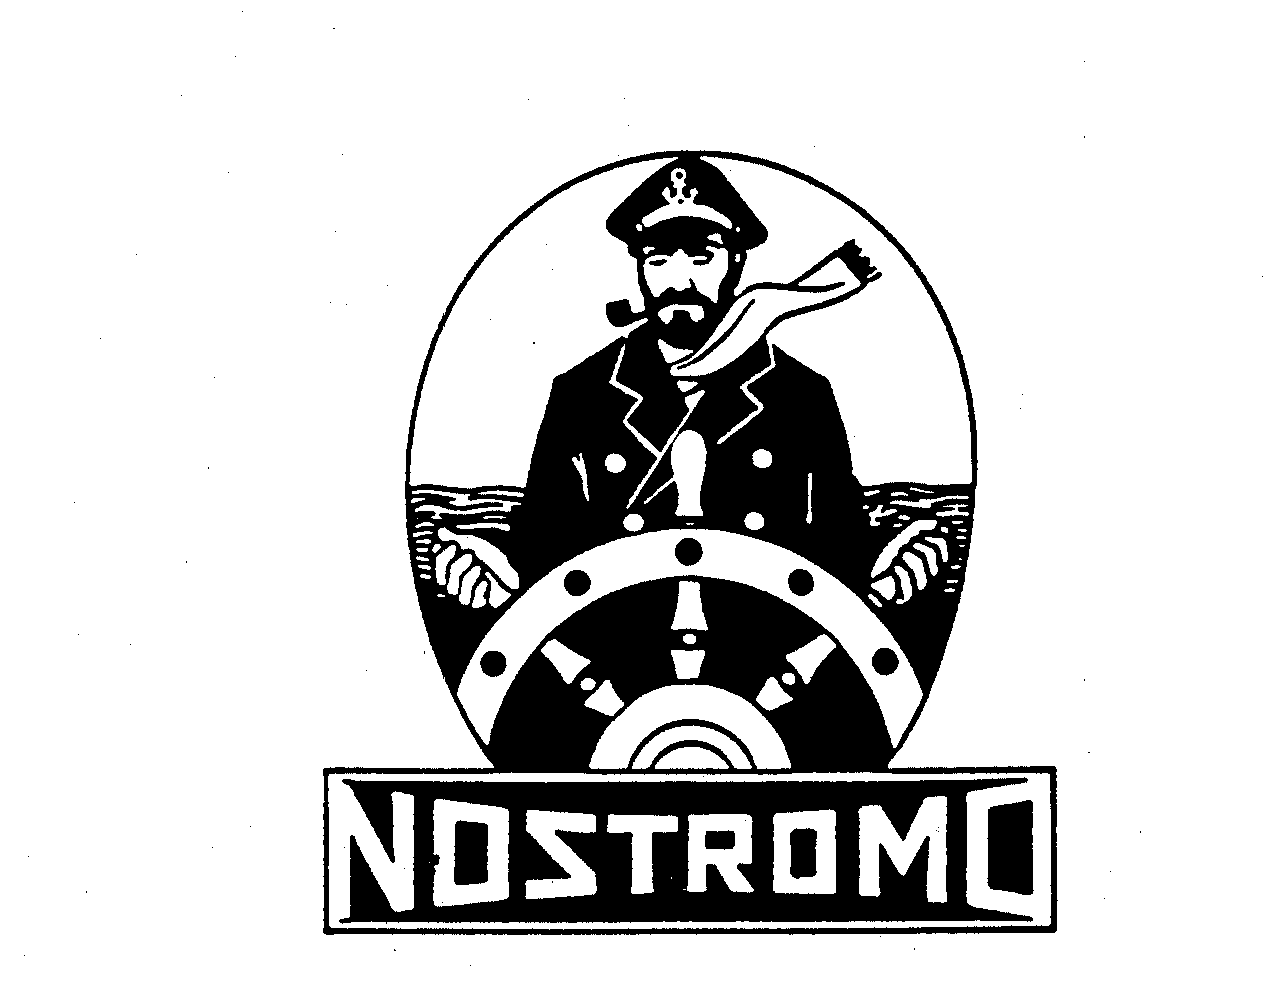 Trademark Logo NOSTROMO